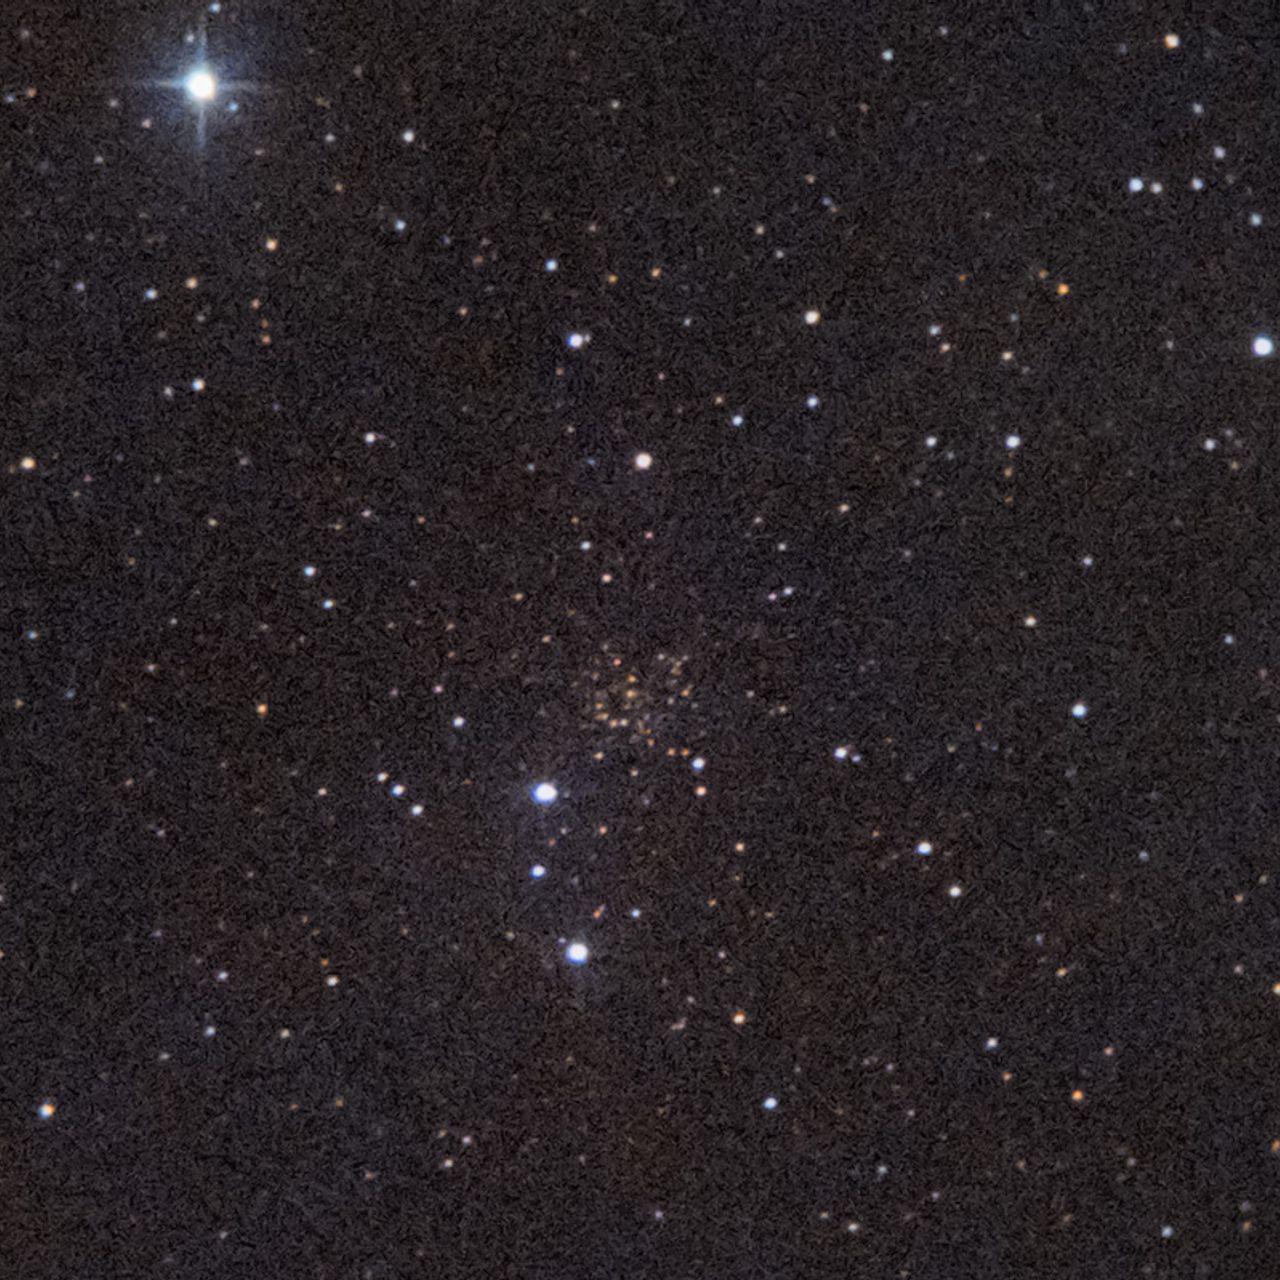 NGC609